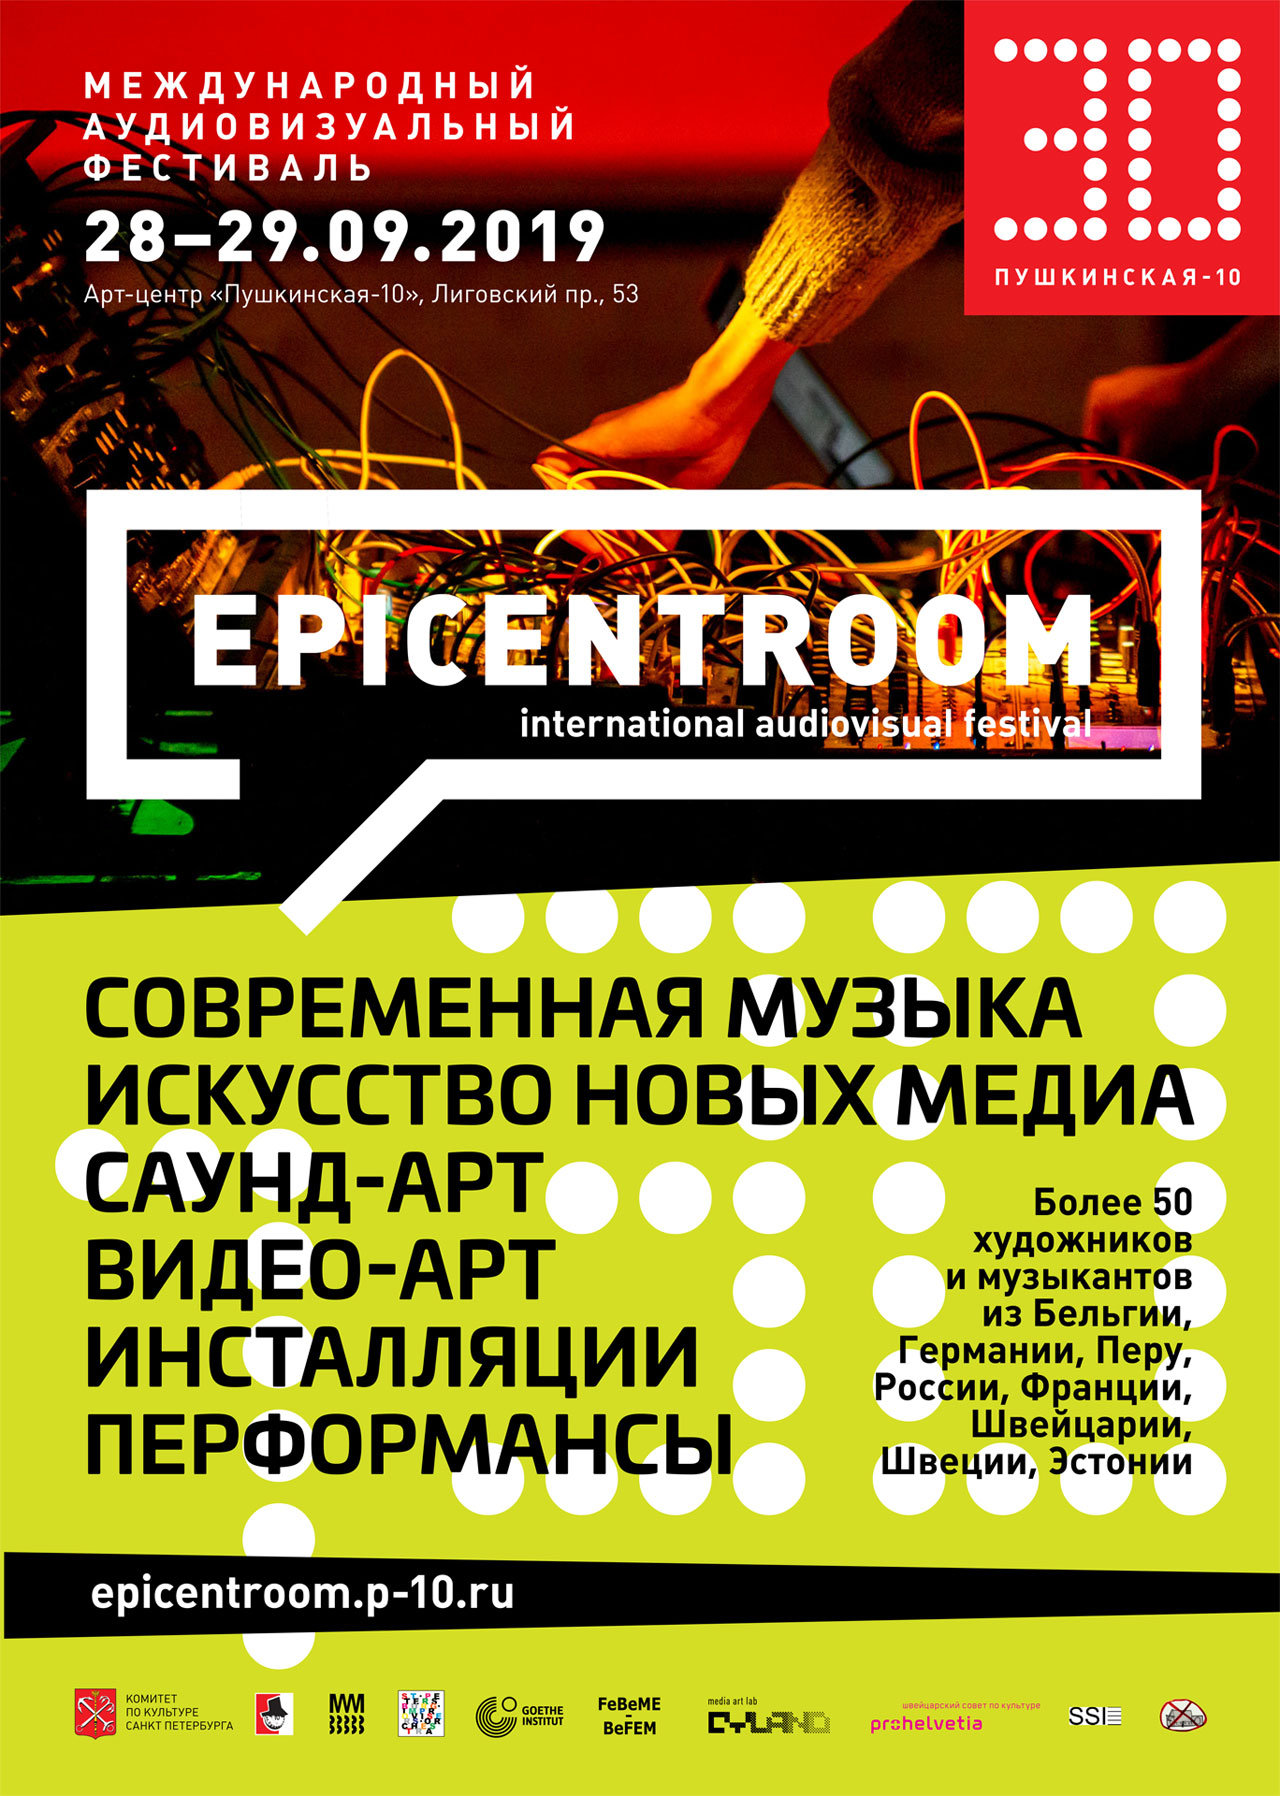 Международный аудиовизуальный фестиваль EPICENTROOM